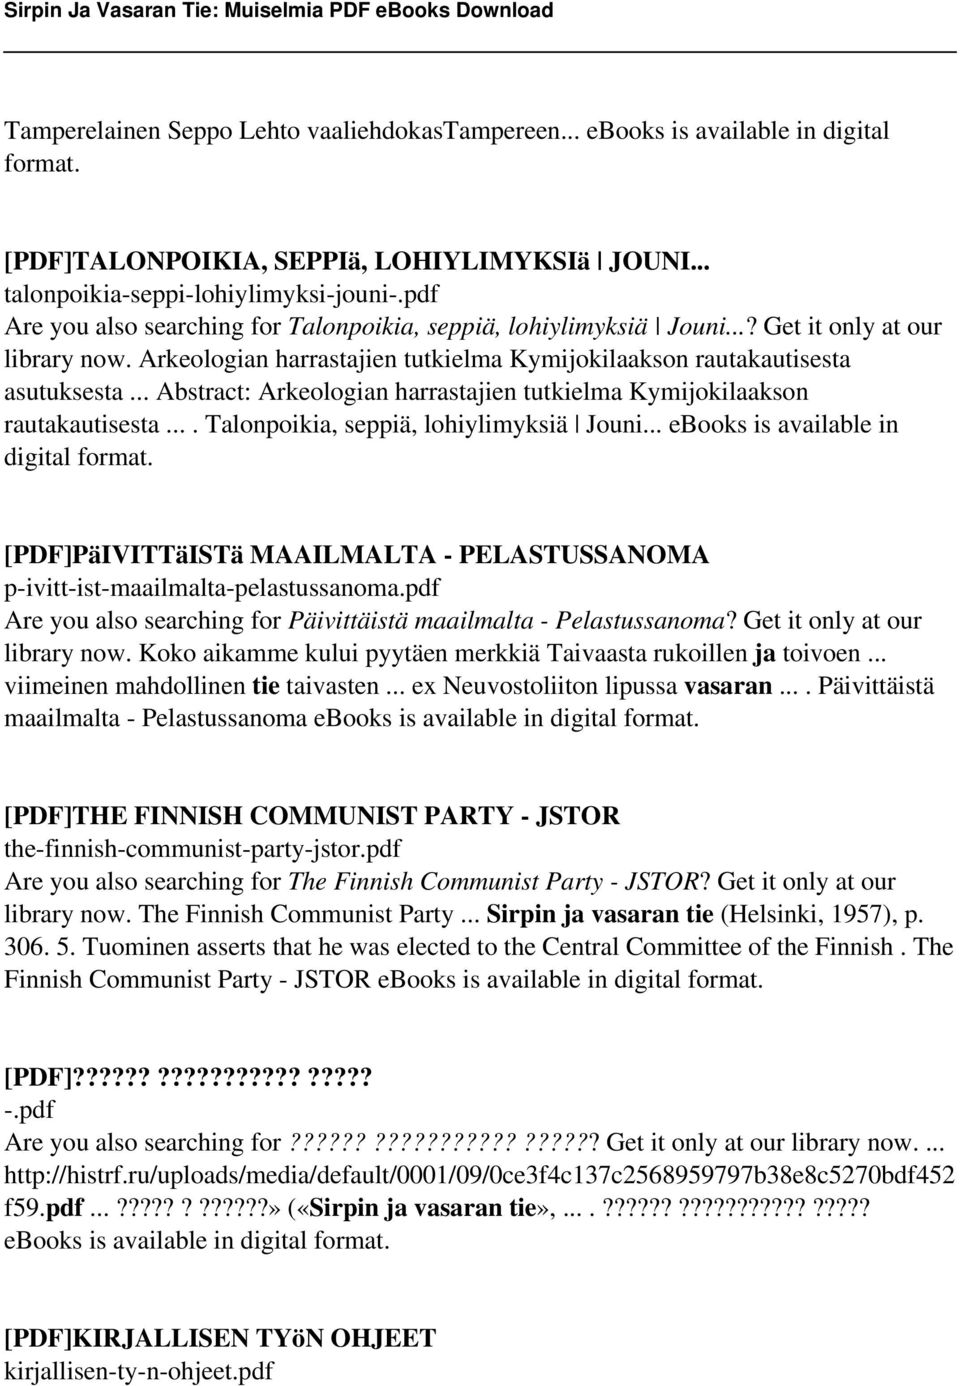 .. Abstract: Arkeologian harrastajien tutkielma Kymijokilaakson rautakautisesta.... Talonpoikia, seppiä, lohiylimyksiä Jouni... ebooks is available in digital format.